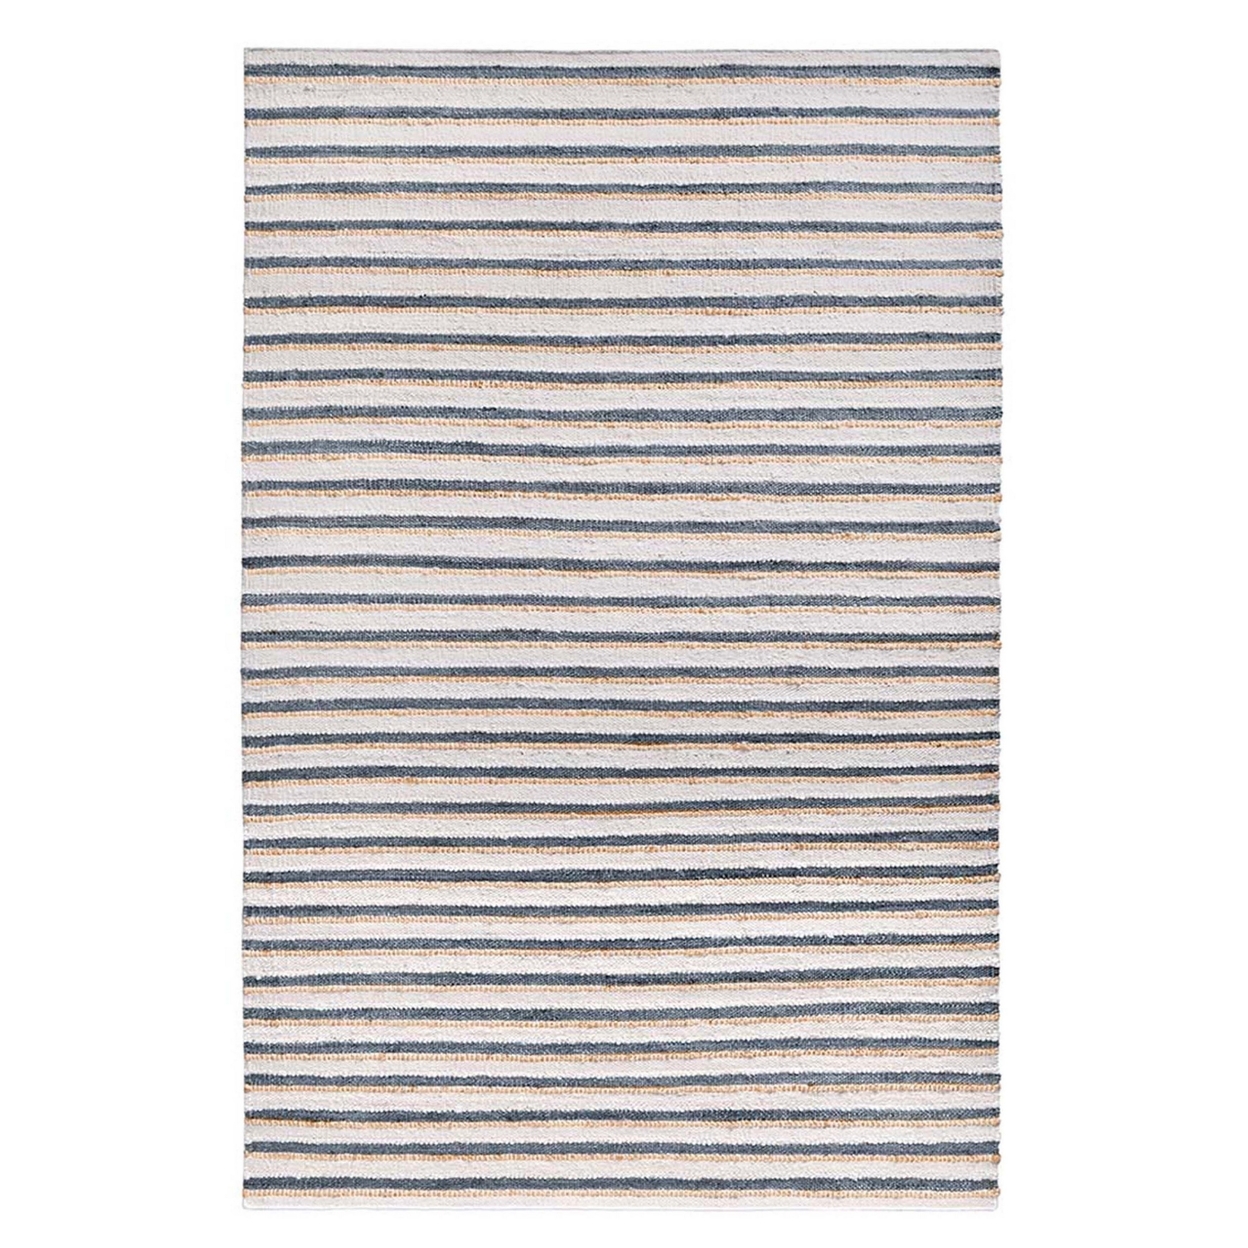 Azu 8 X 10 Handmade Large Area Rug, Classic Stripes, Ivory, Aqua Blue- Saltoro Sherpi